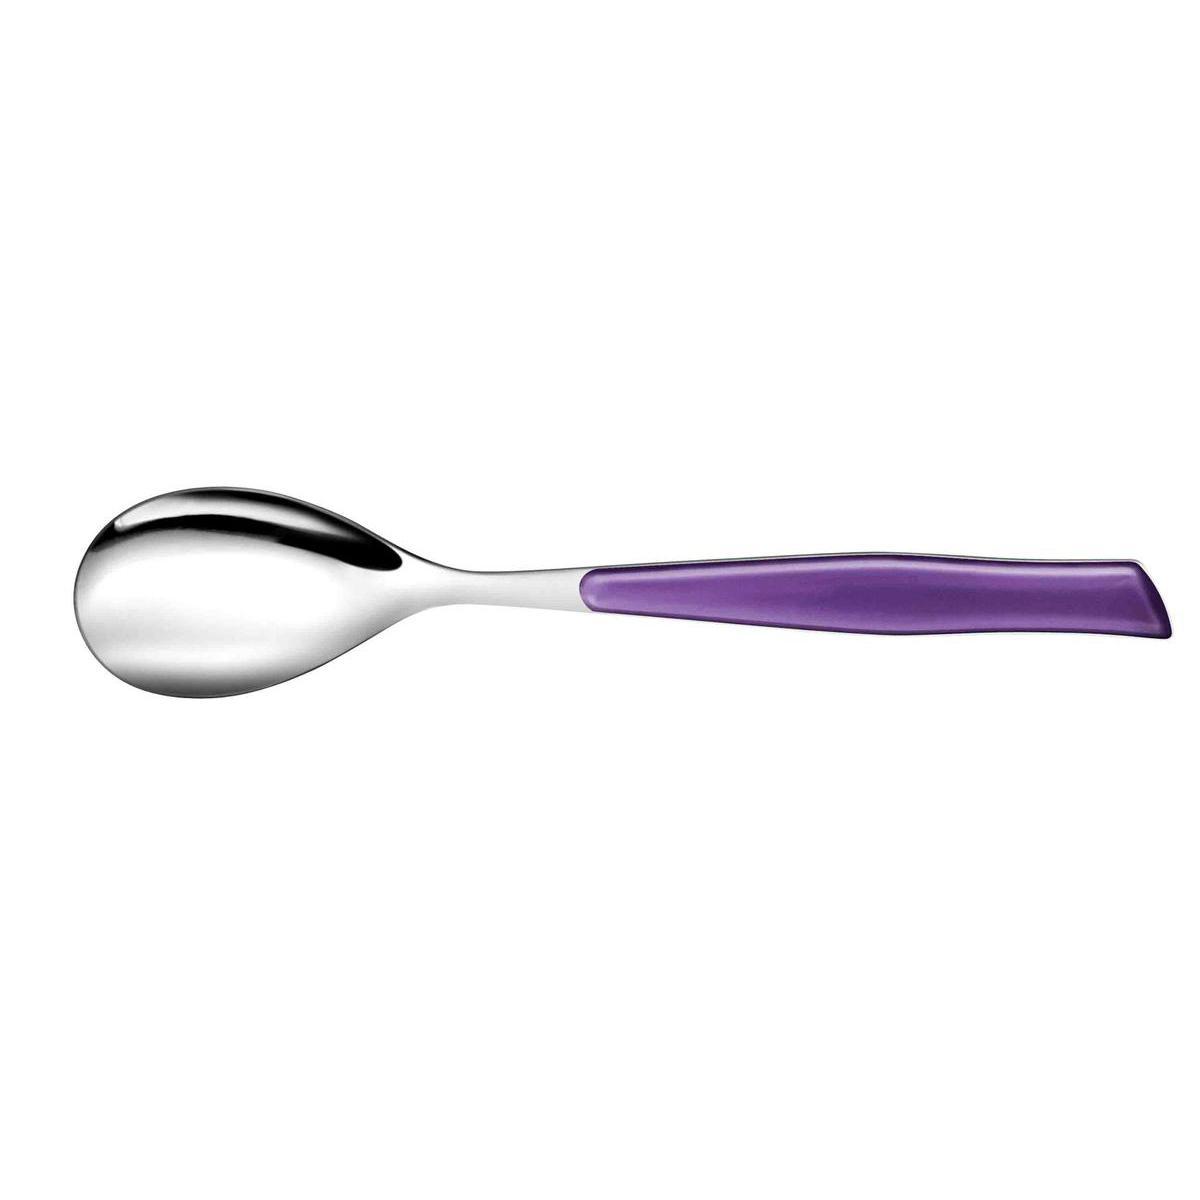 Cuillère soupe elegance mauve - Acier inoxydable - 21,6 cm - Violet